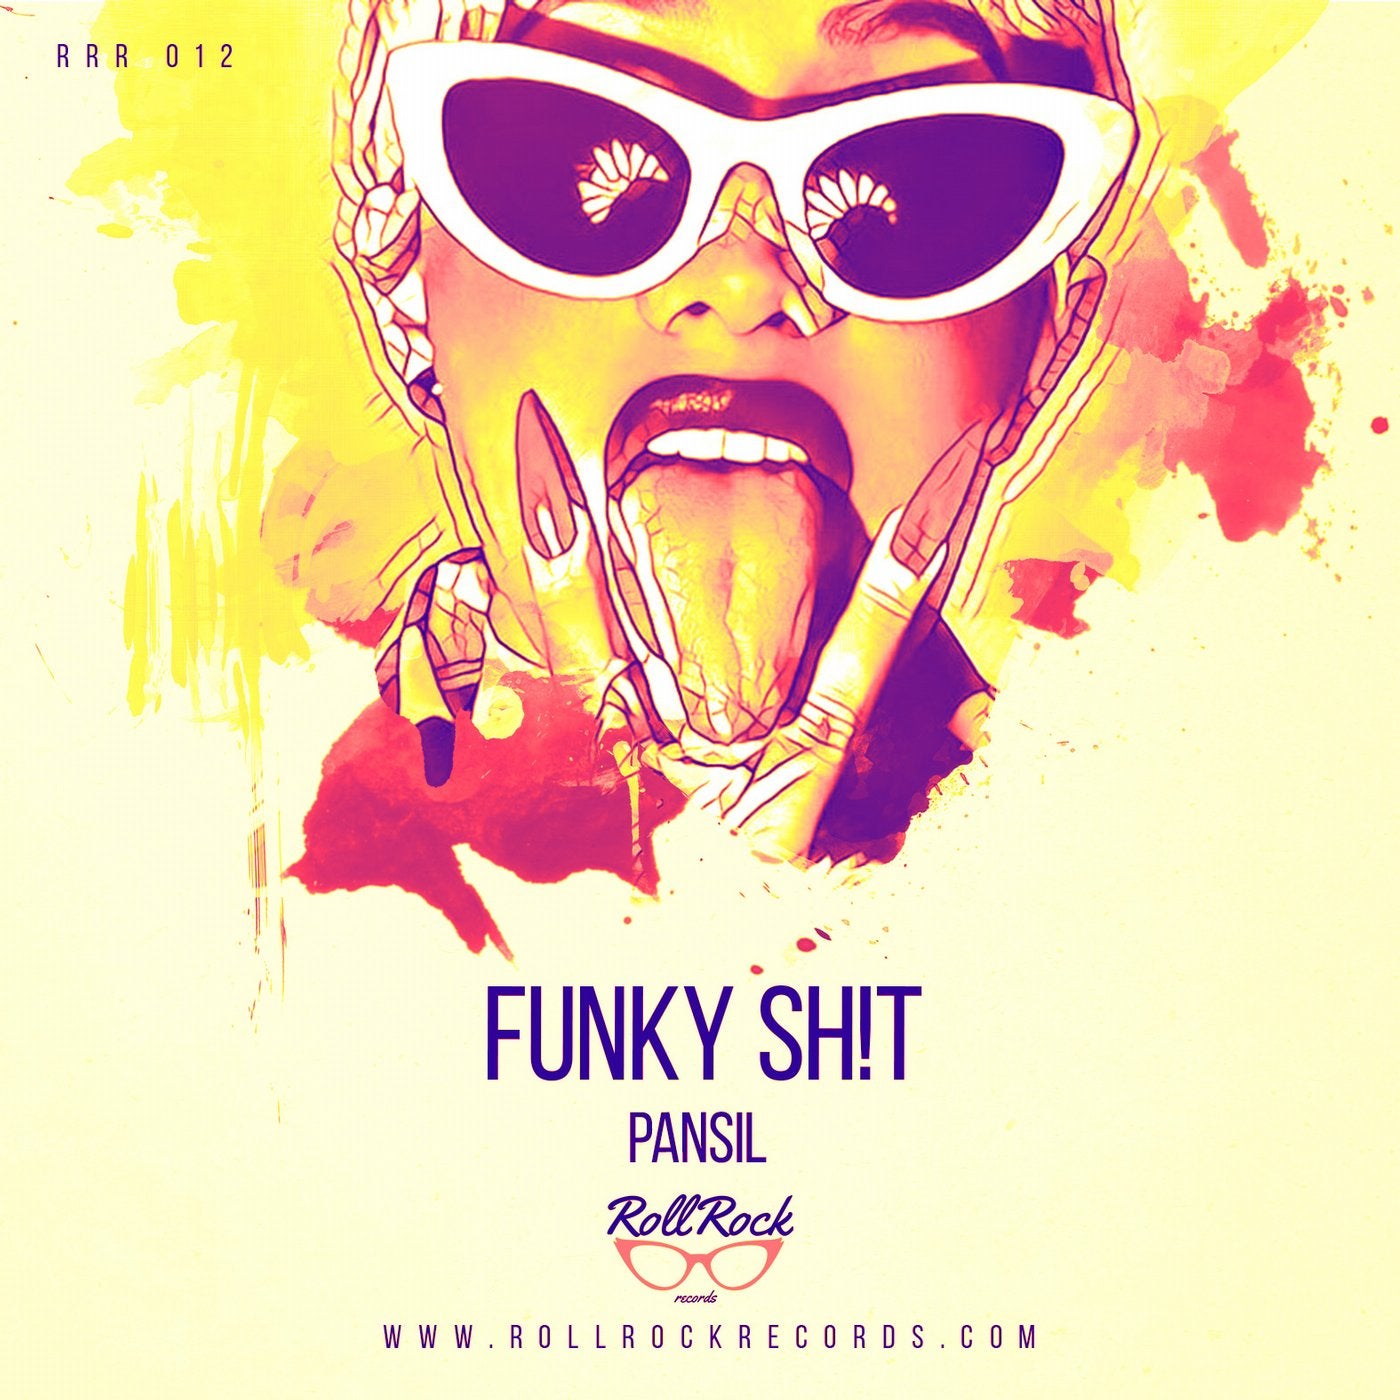 Funky Sh!t